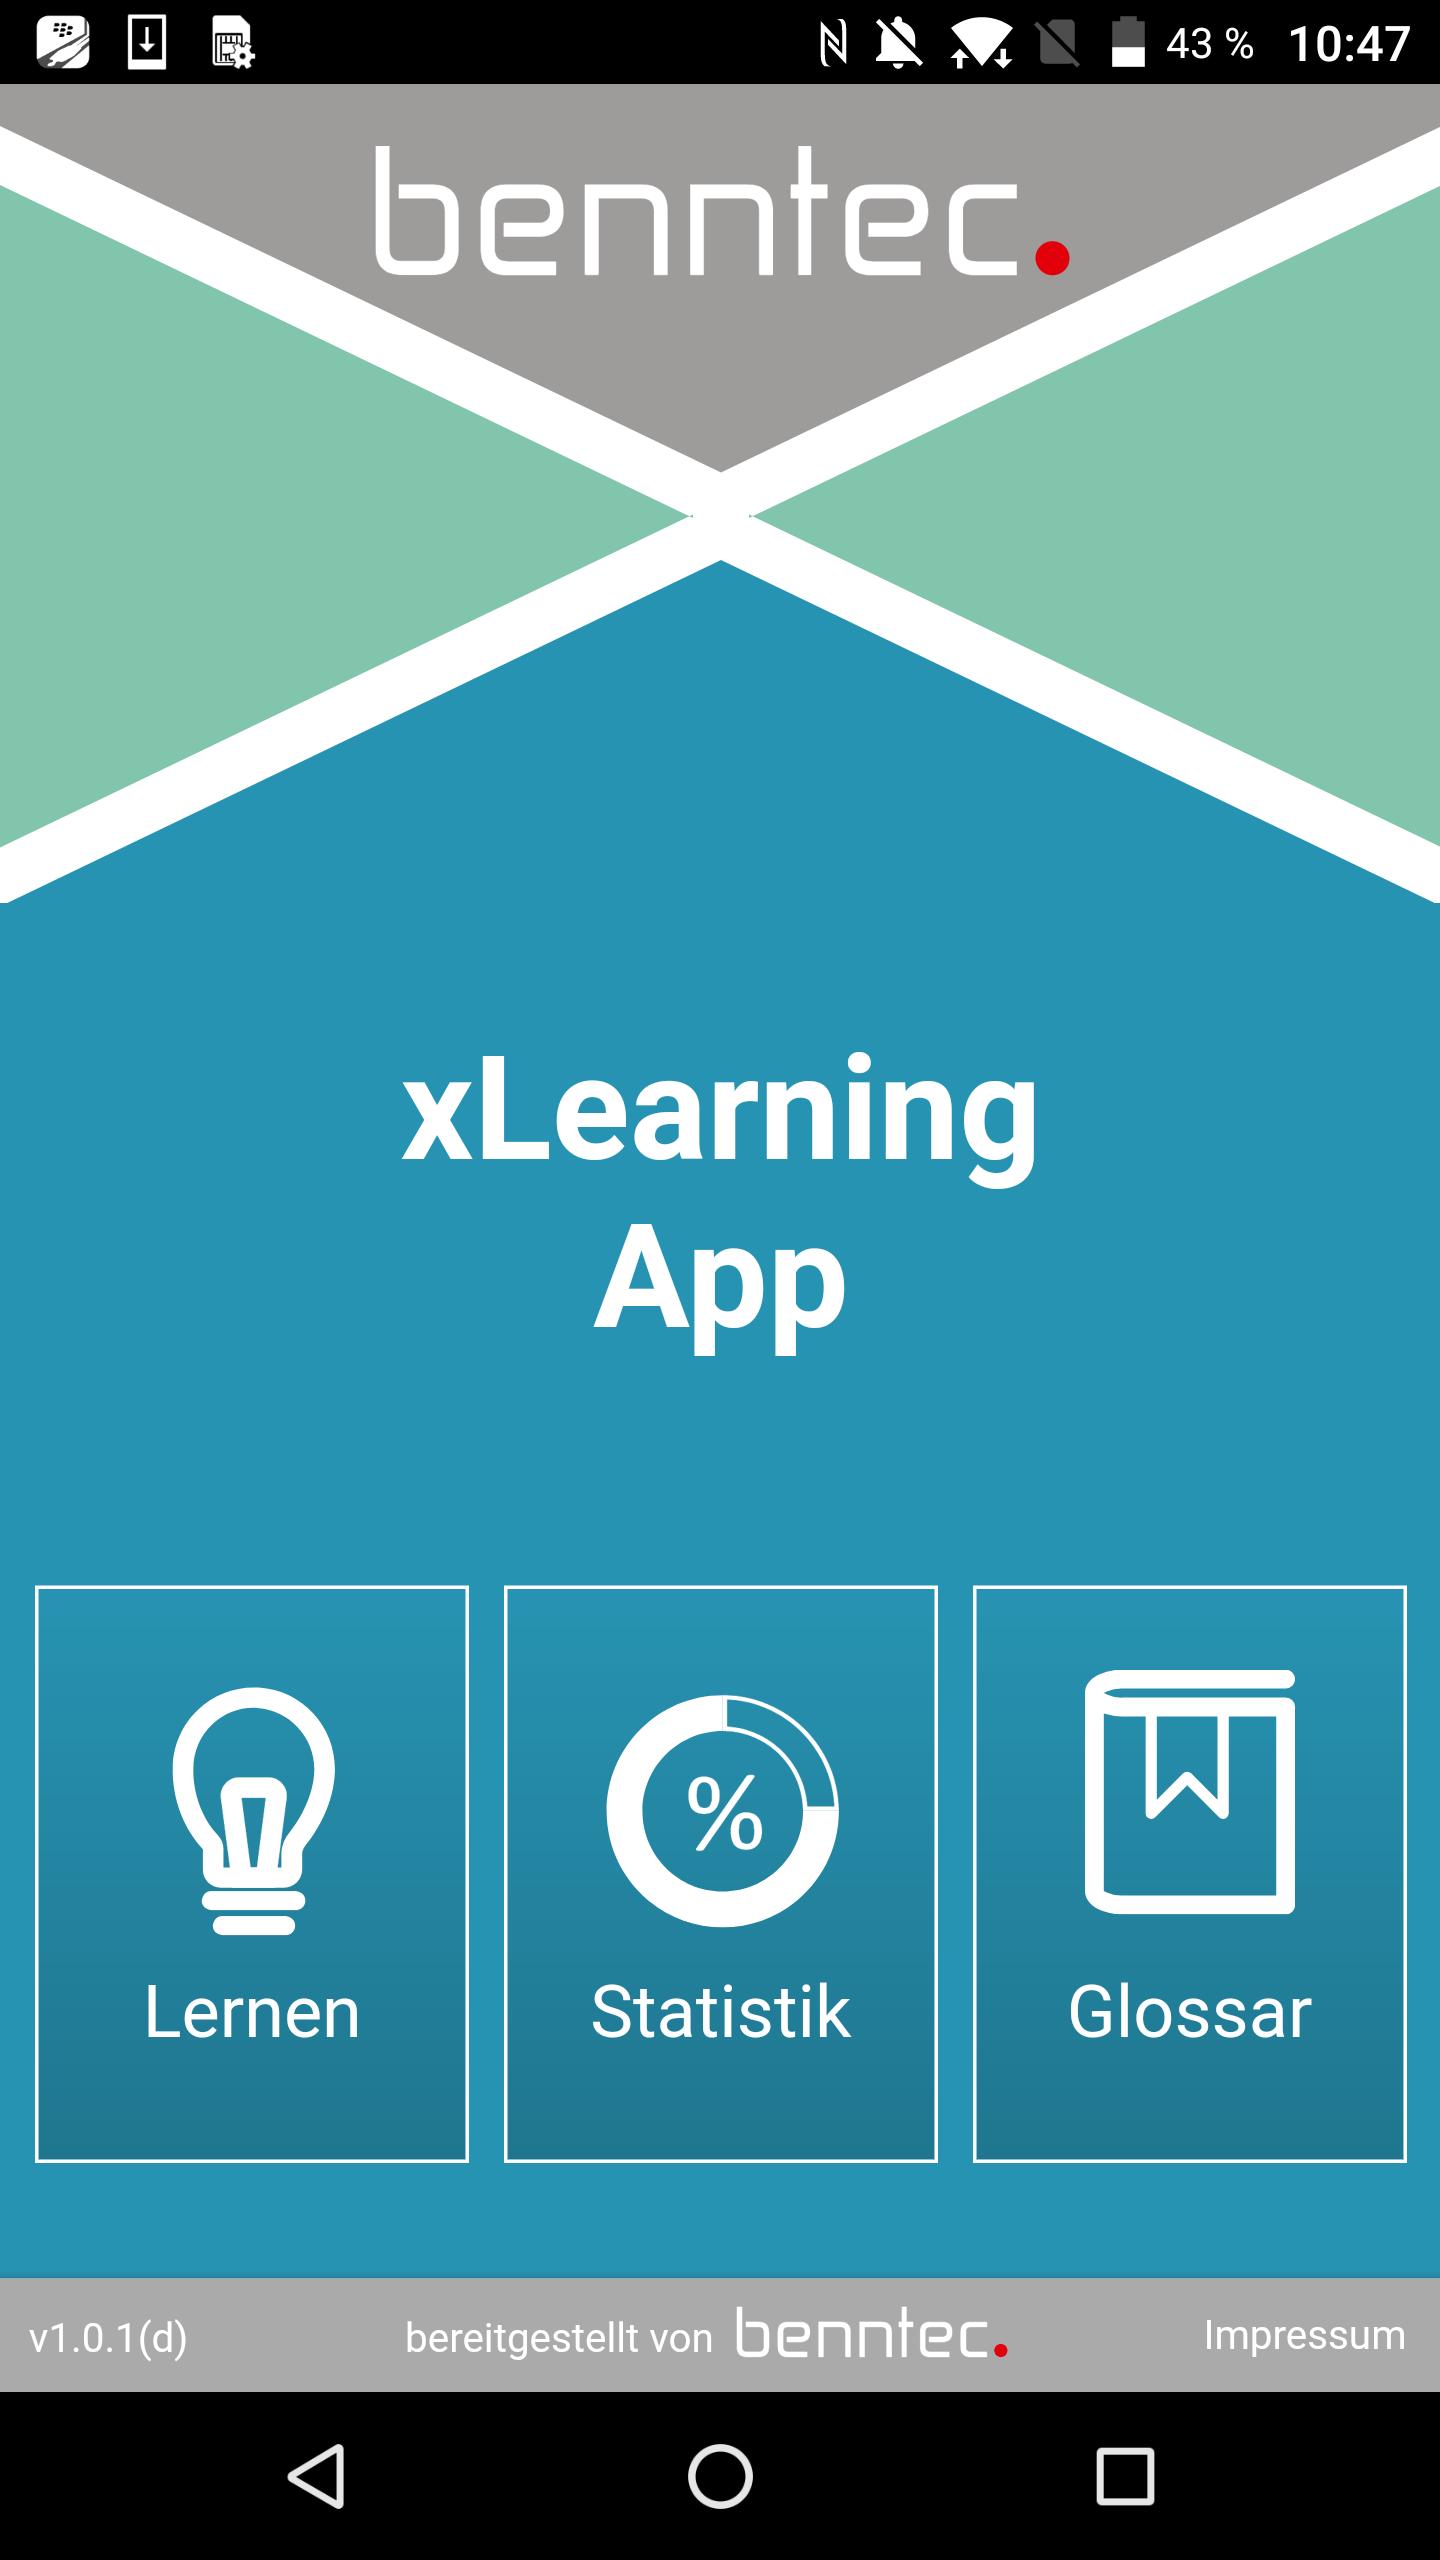 xLearning App